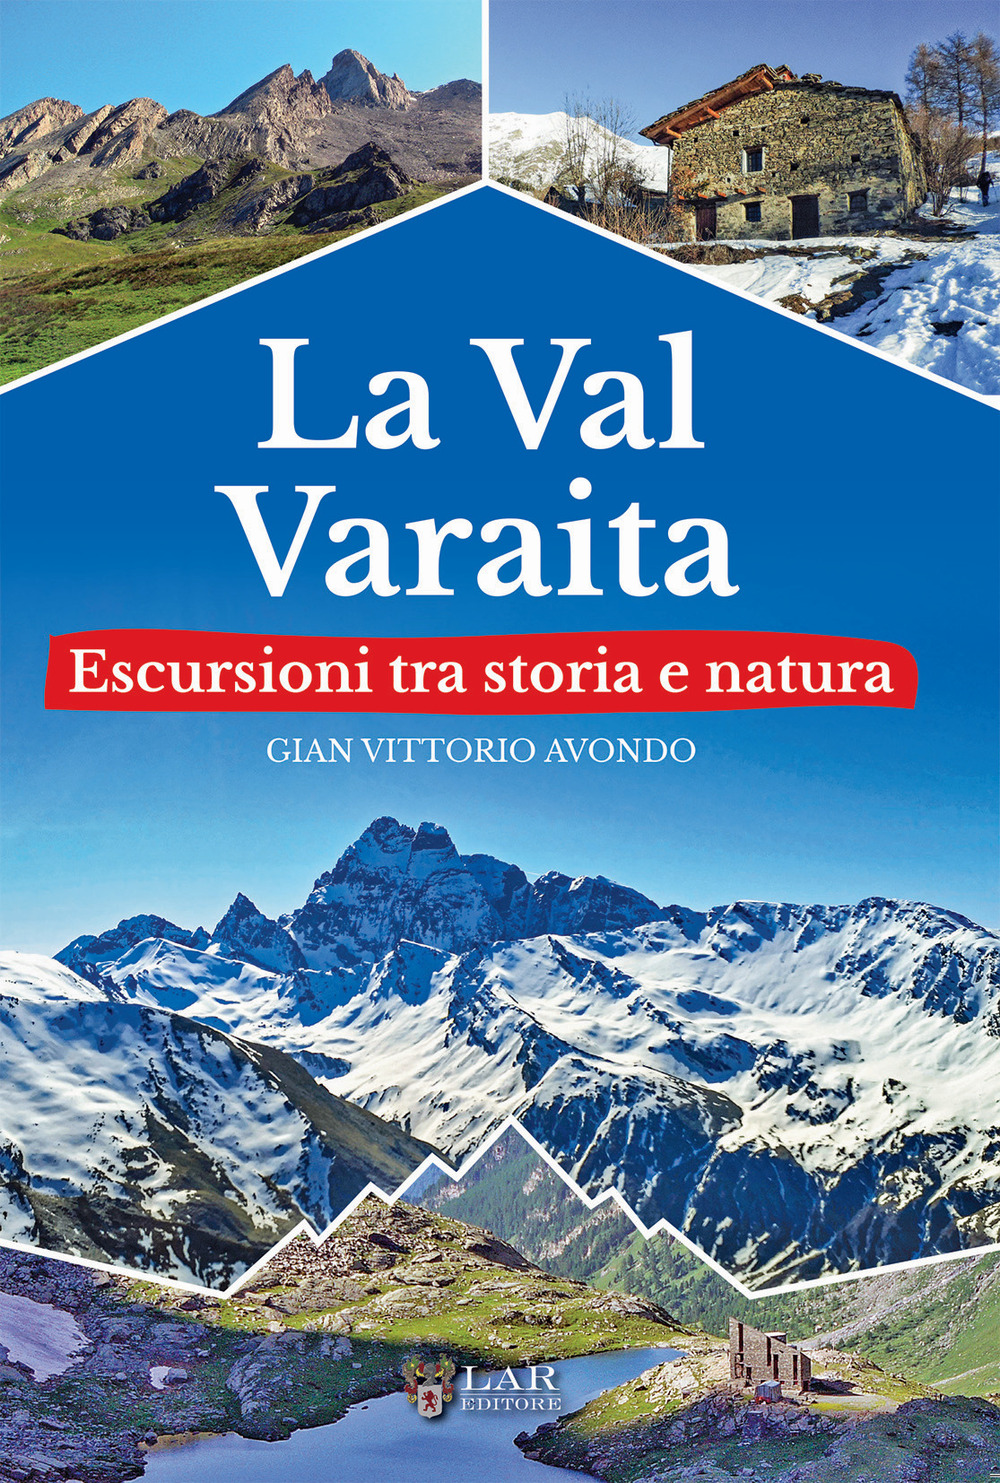 La Val Varaita Escursioni tra storia e natura